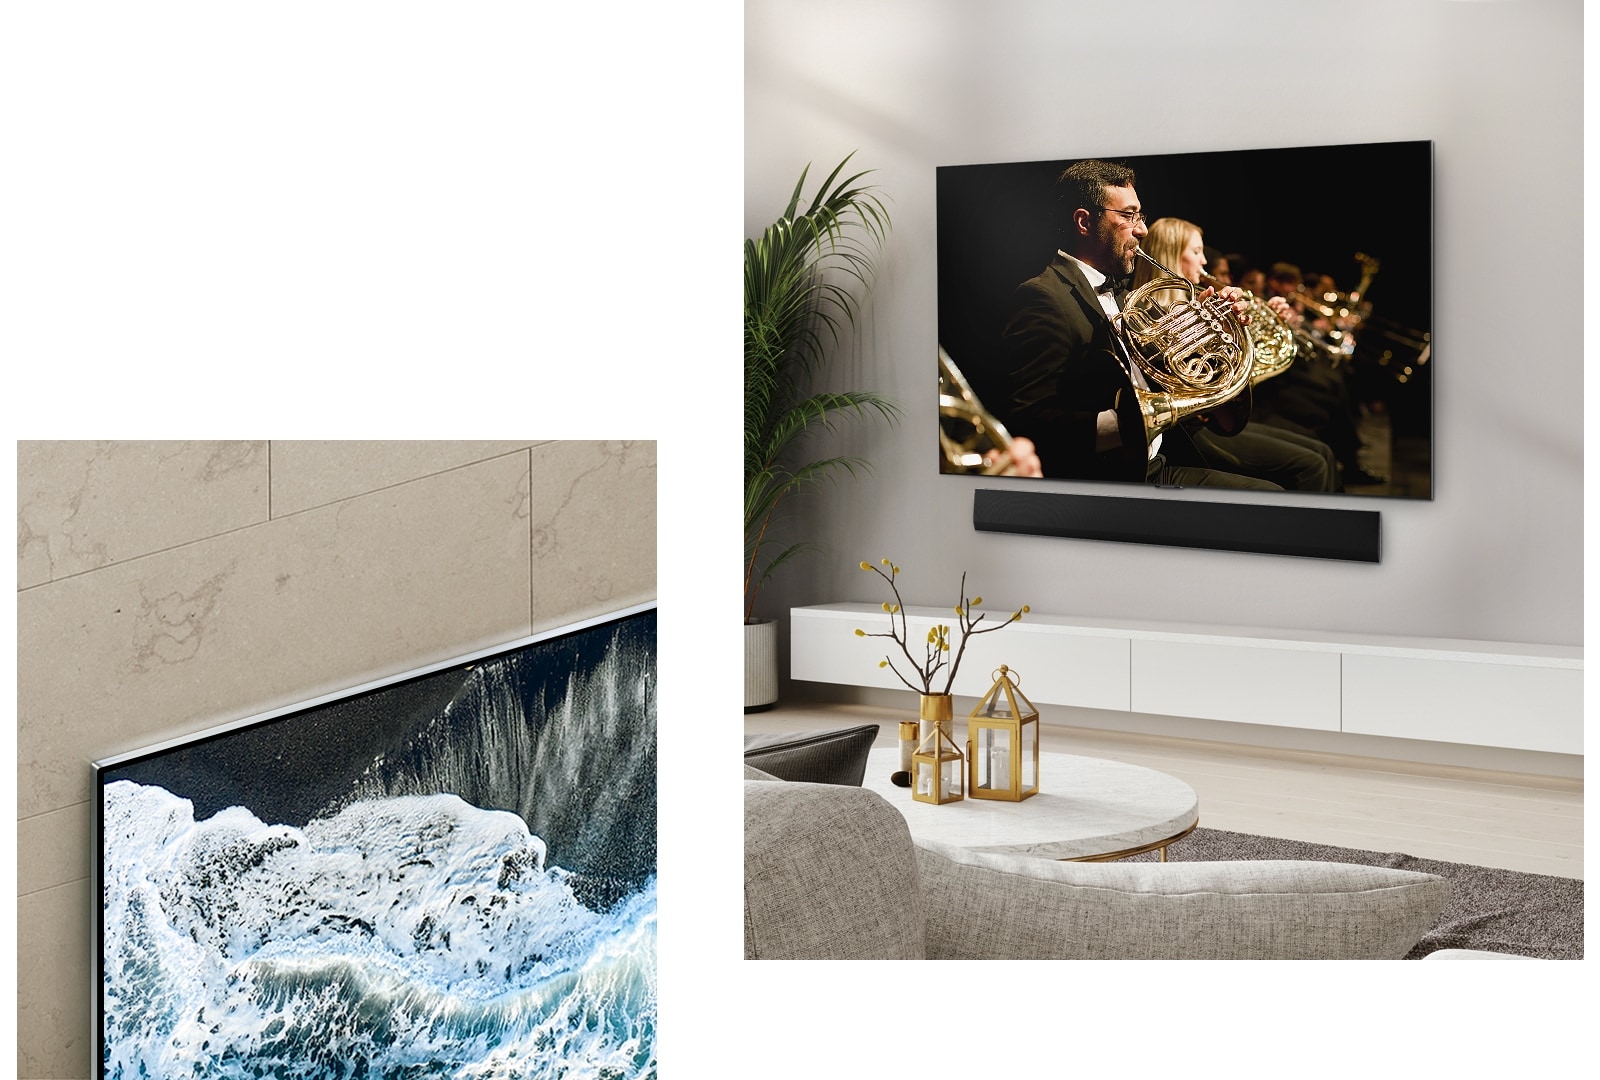 LG OLED TV OLED G4 kampu nuo marmurinės sienos, matoma, kaip jis susilieja su siena.   LG OLED TV, OLED G4 ir LG garso juosta švarioje gyvenamojoje erdvėje plokščioje plokštumoje prie sienos, ekrane skambant orkestro kūriniui. 